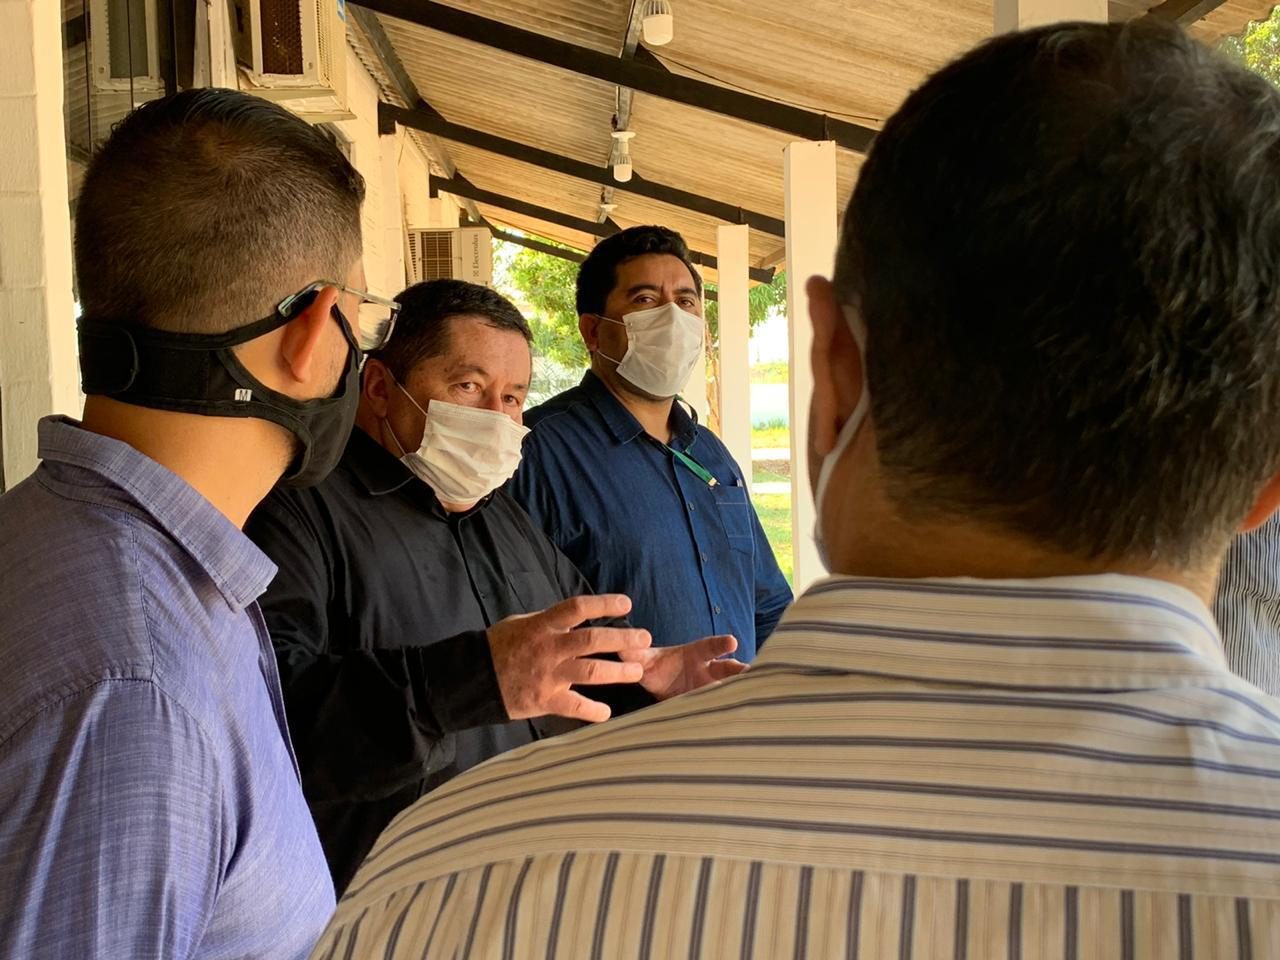 Unidades de segurança e socioeducativa em Porto Velho recebem visita da equipe técnica da Seosp para desenvolver melhorias - News Rondônia